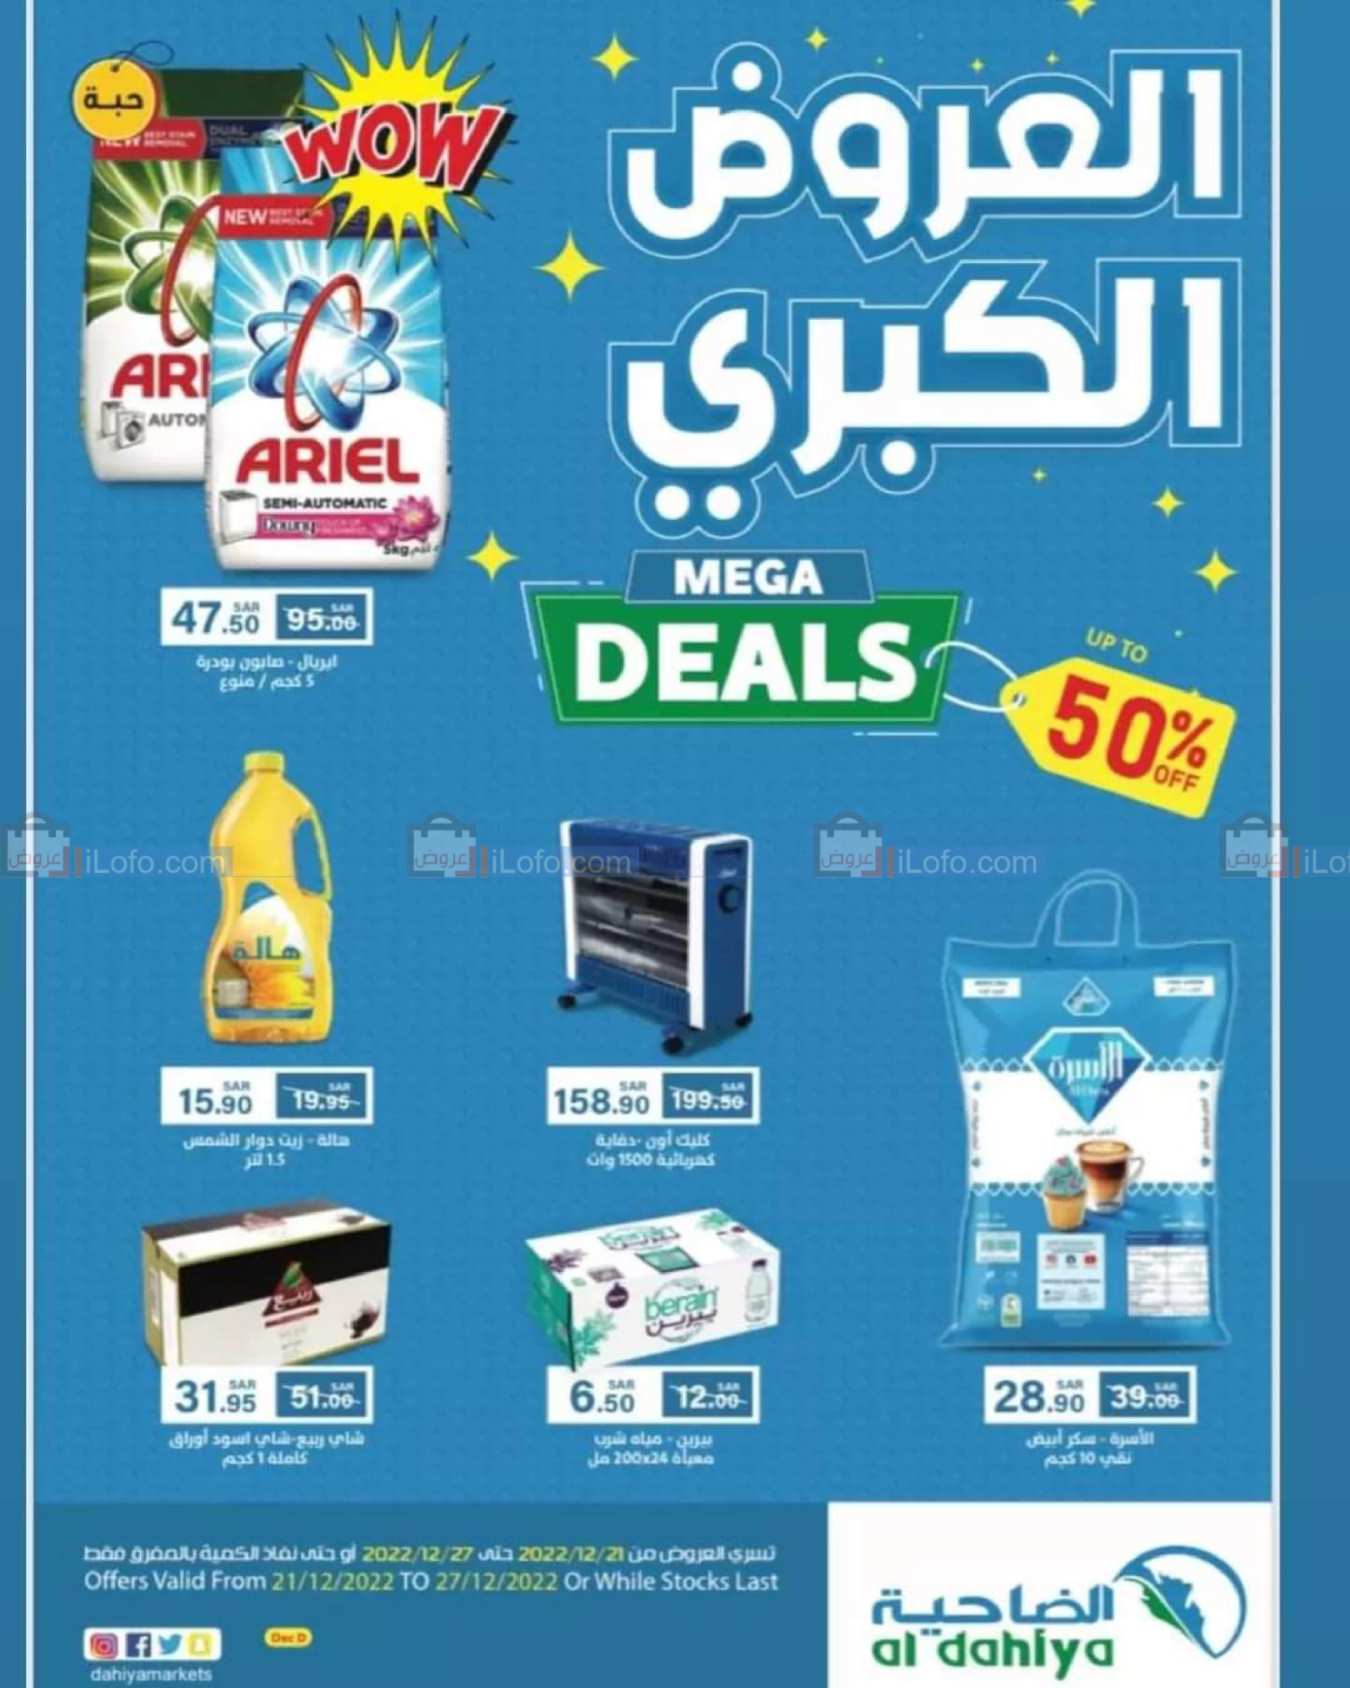 Page 1 at Mega Deals at Aldahiya Market Saudi